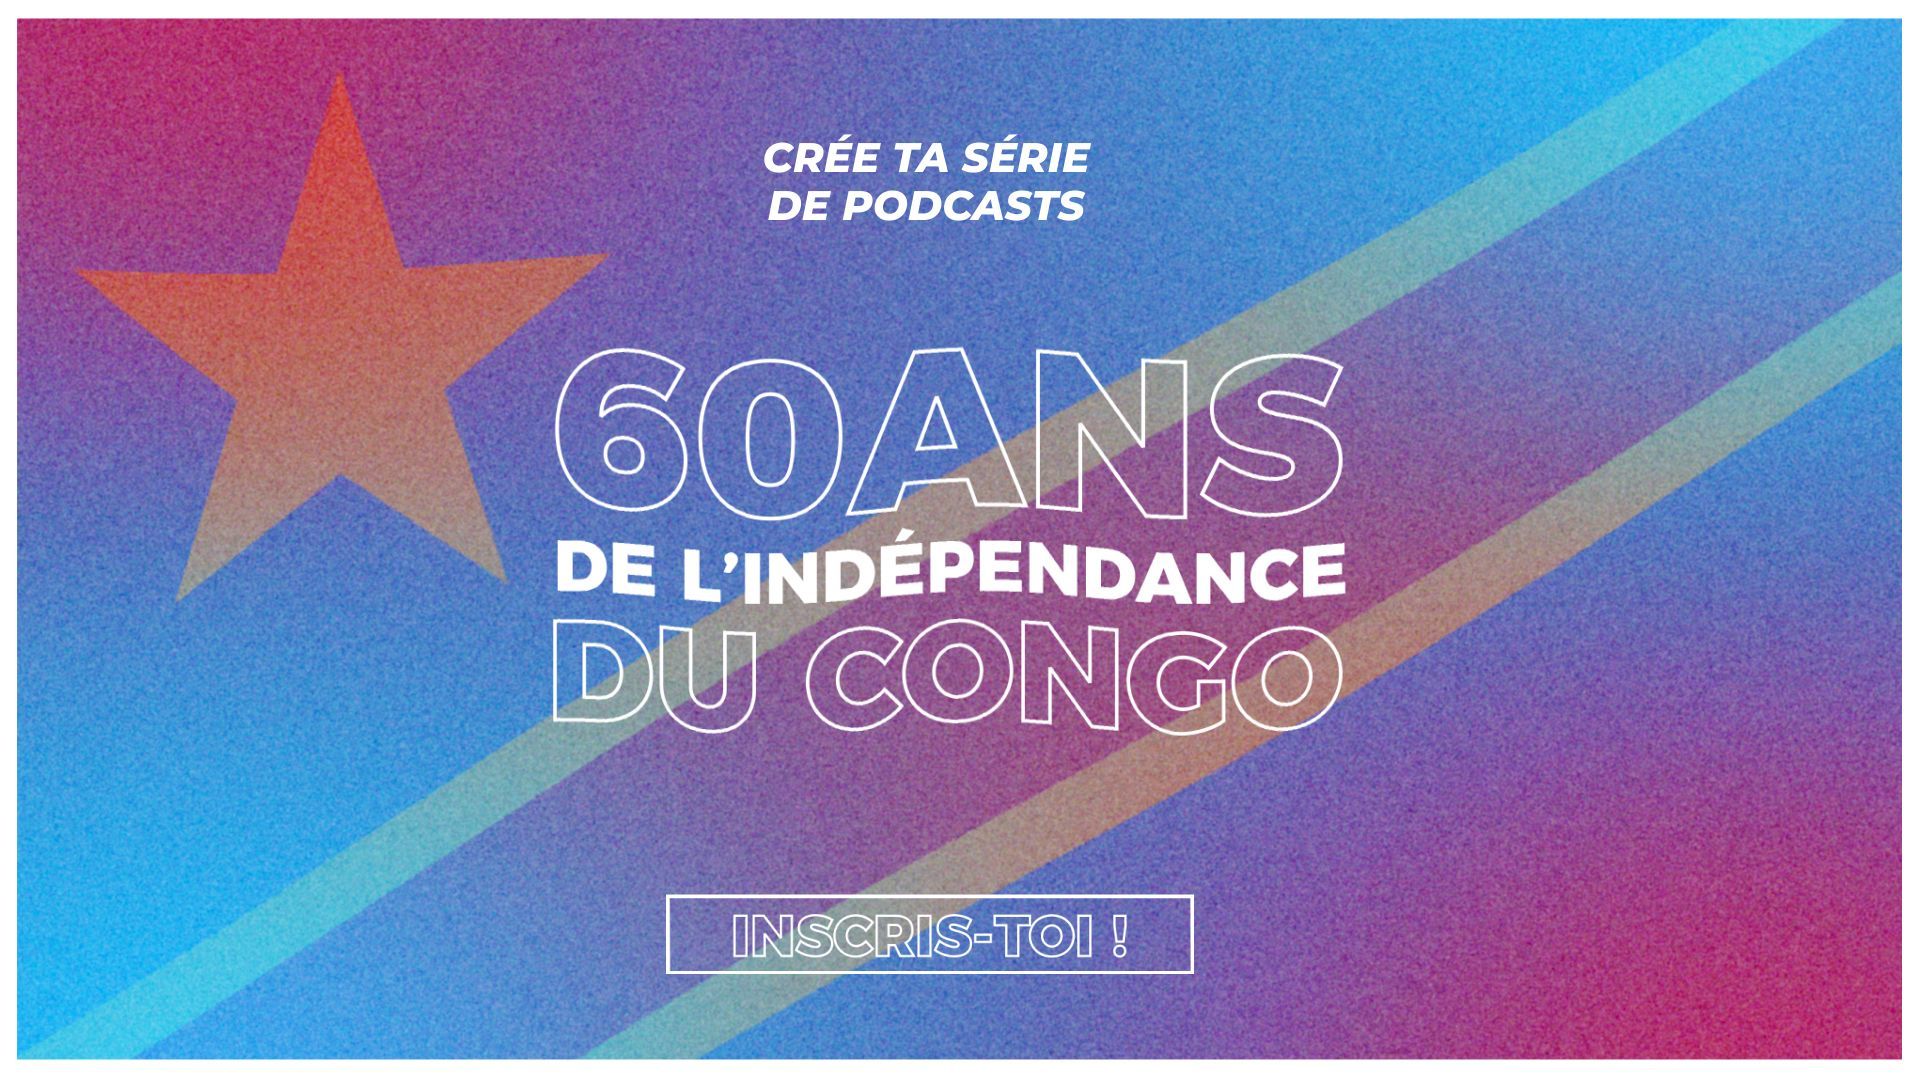 Nouvel appel à projets de podcast natif dans le cadre des 60 ans d'indépendance du Congo